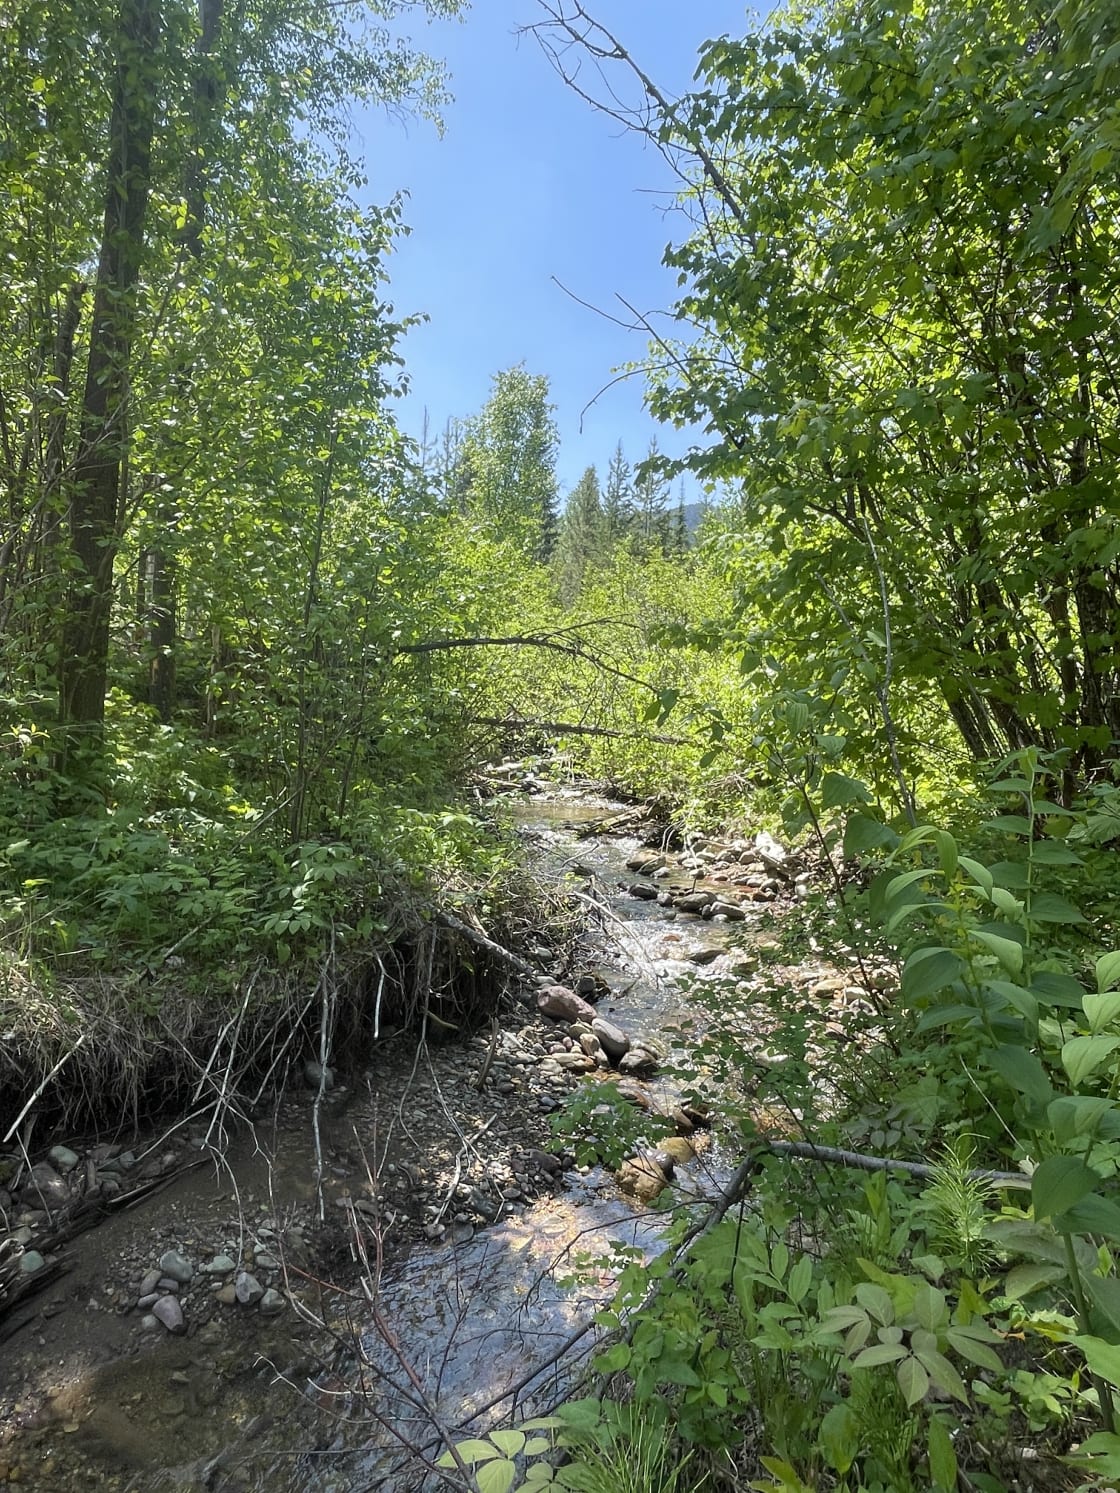 Creek that runs through camp area